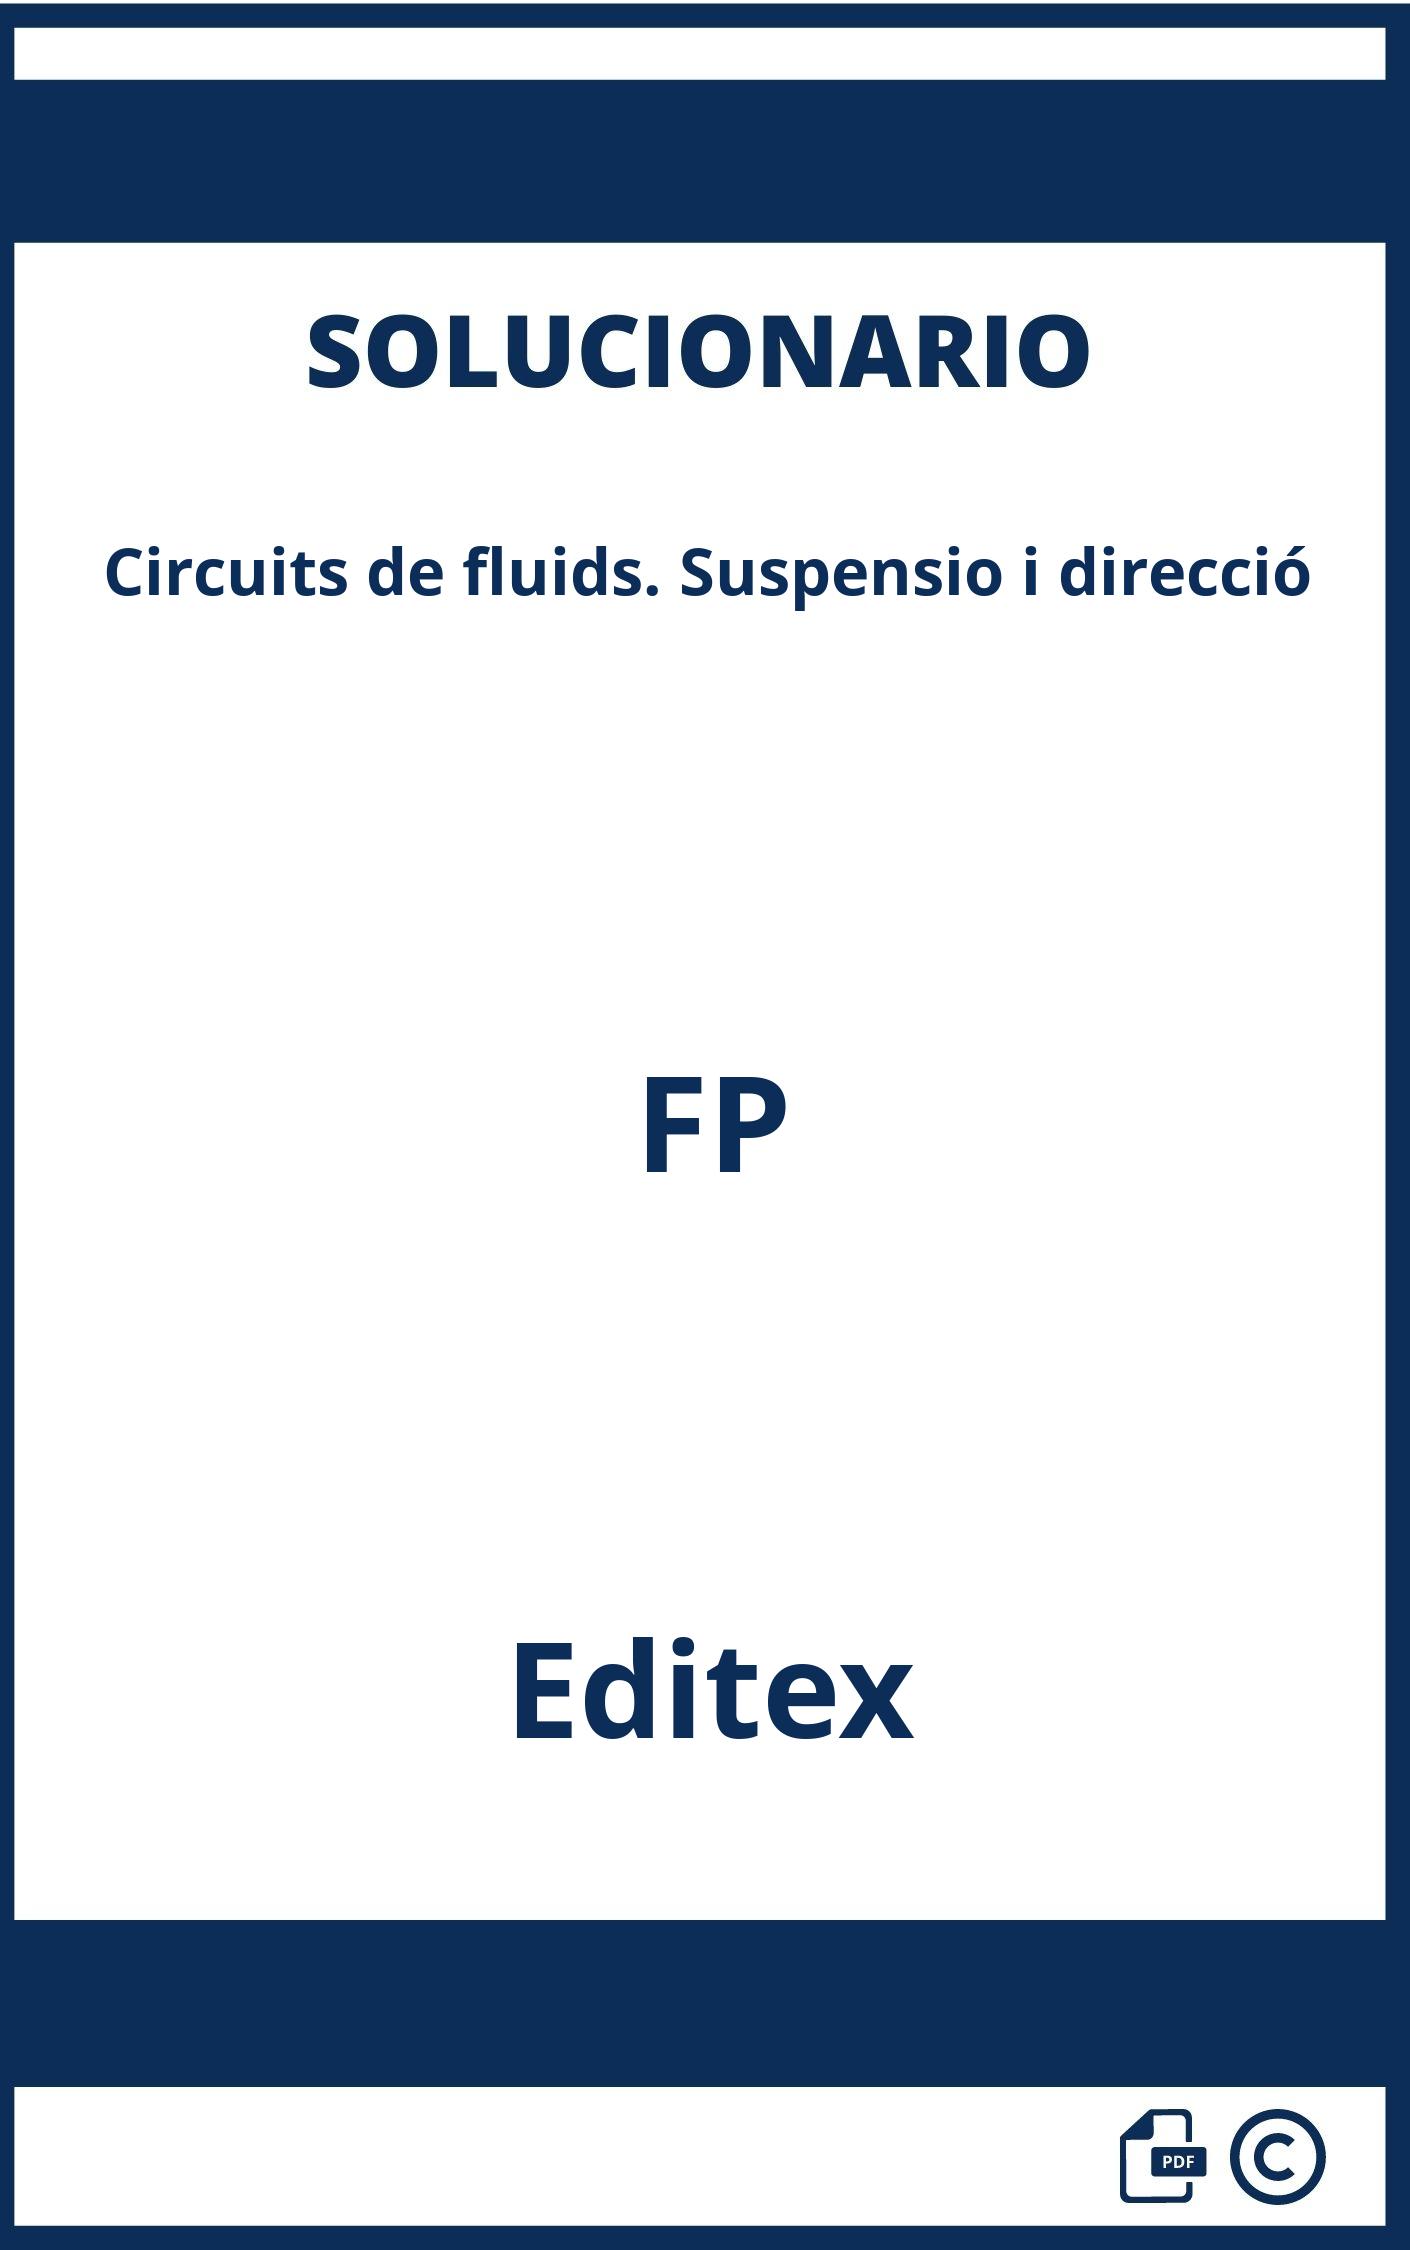 Solucionario Circuits de fluids. Suspensio i direcció FP Editex